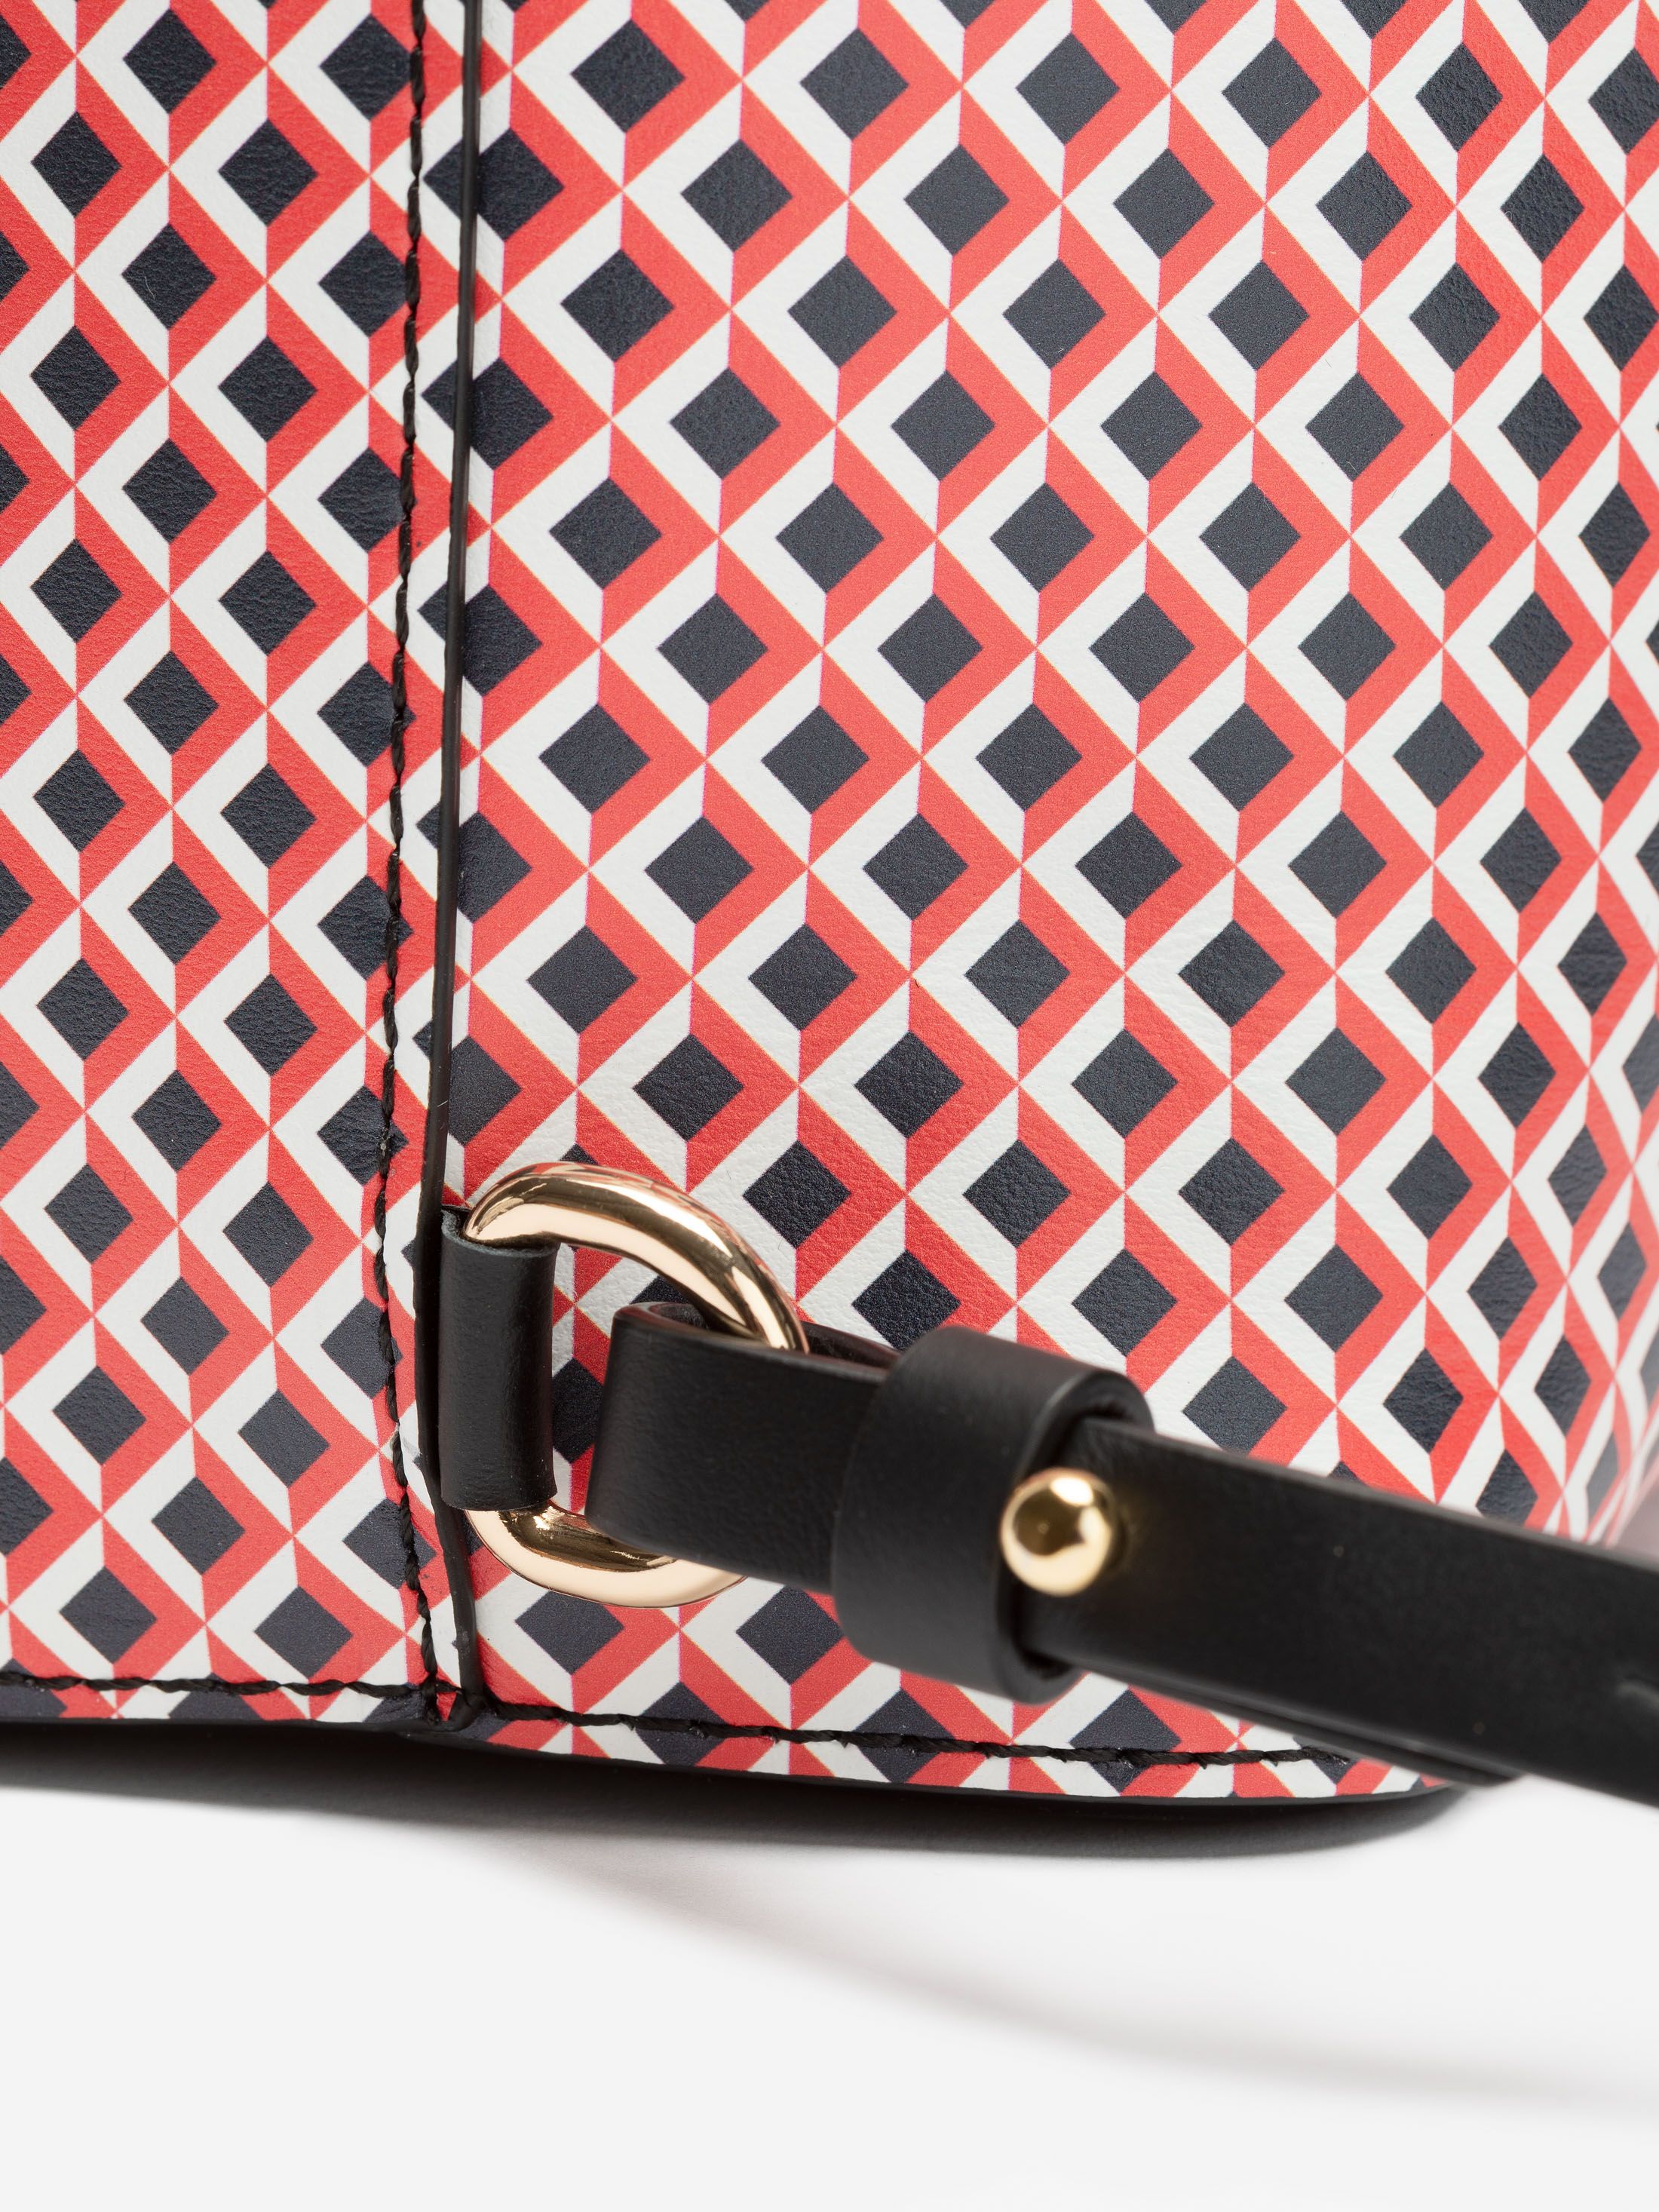 Diseña tu propia mochila saco personalizada por ti, fabricada a mano en genuino cuero de Nappa